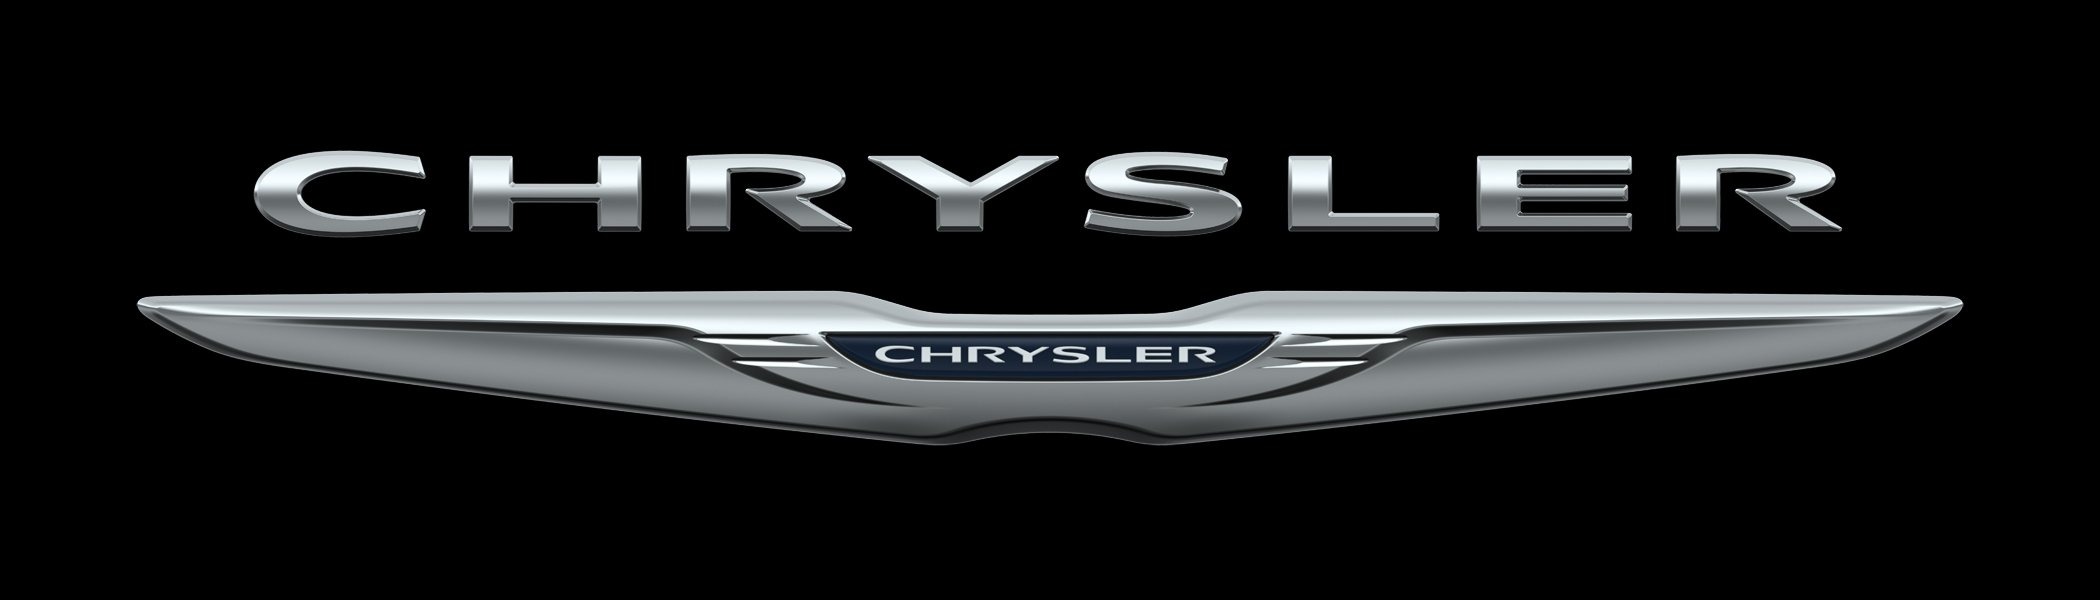 ремонт Chrysler в СПб